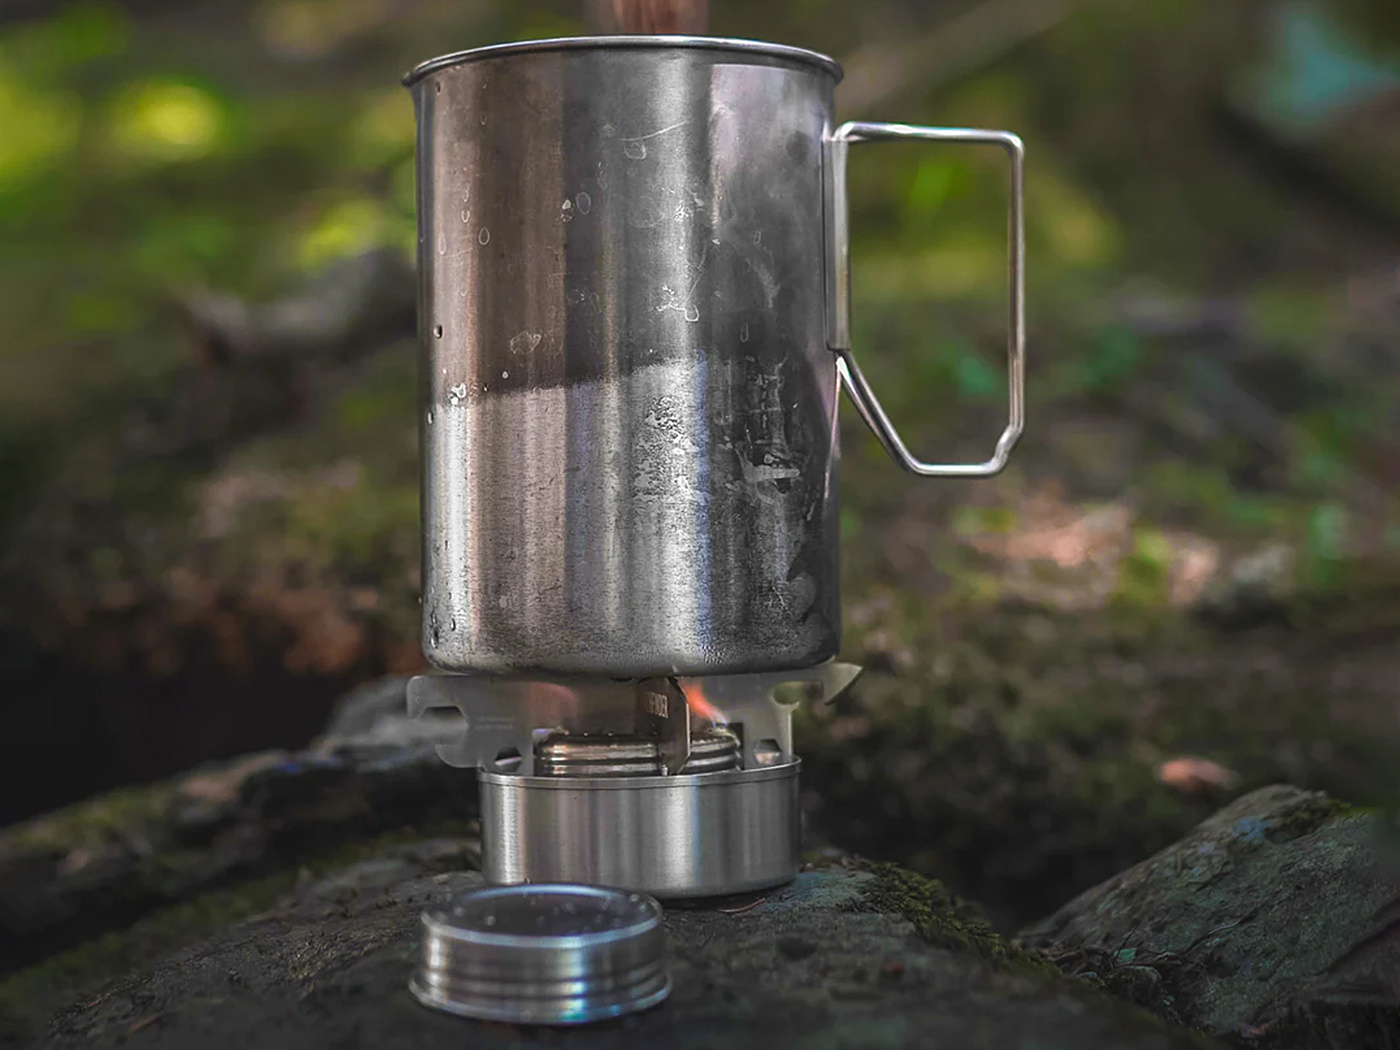 Pathfinder Bush Pot Stove / Estufa Camping para lata de alcohol